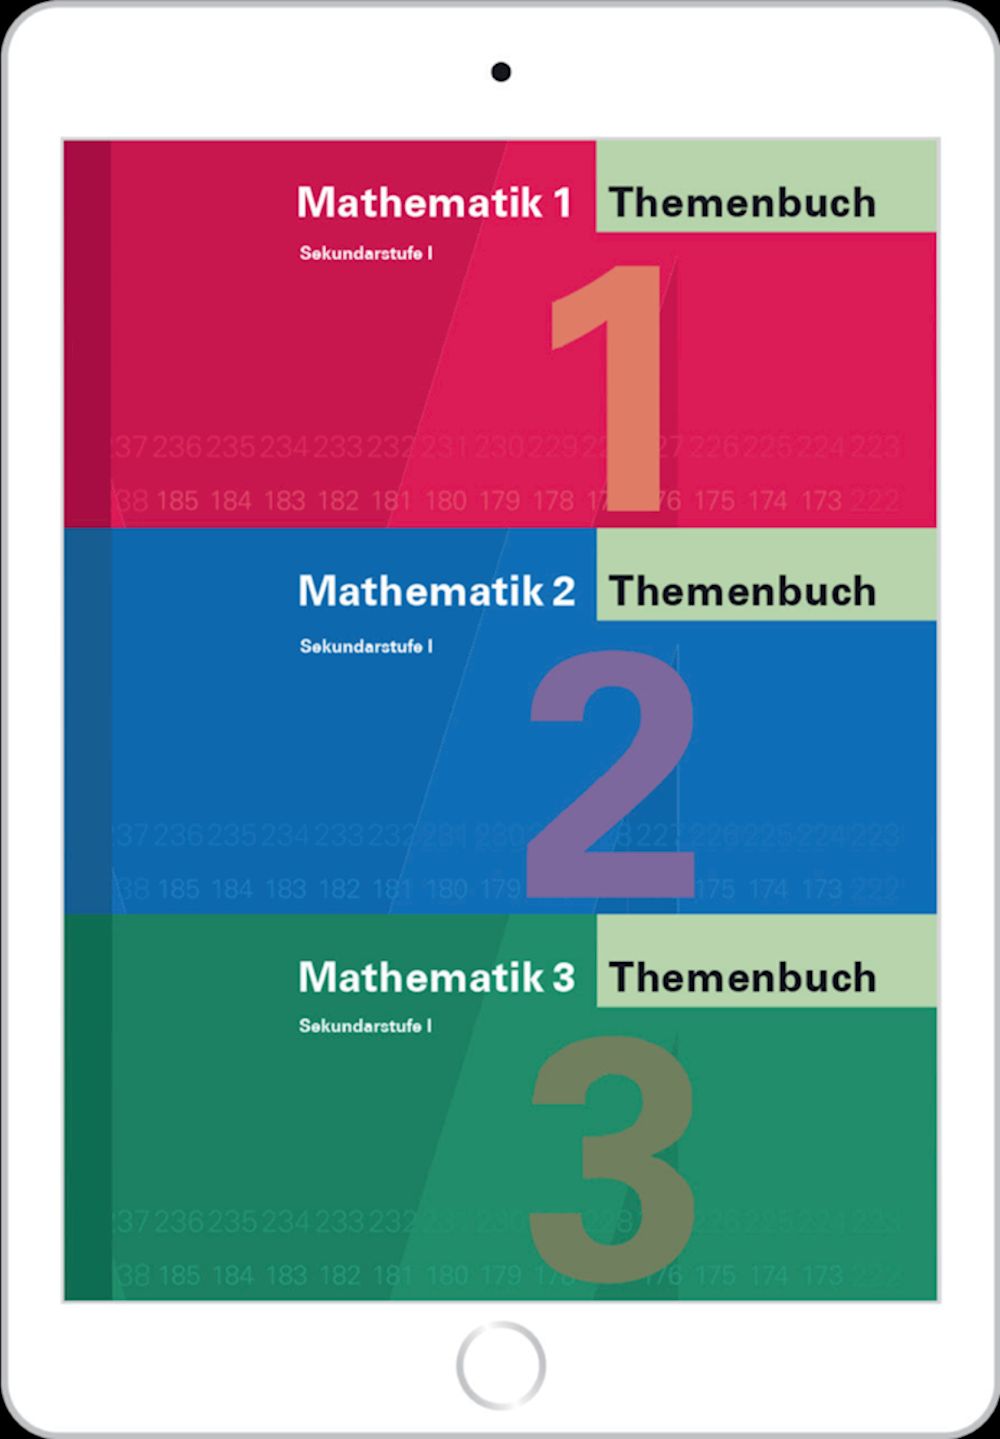 Mathematik 1-3 Sek I, Themenbuch digital für Lehrpersonen, SPEZIALBESTELLUNG